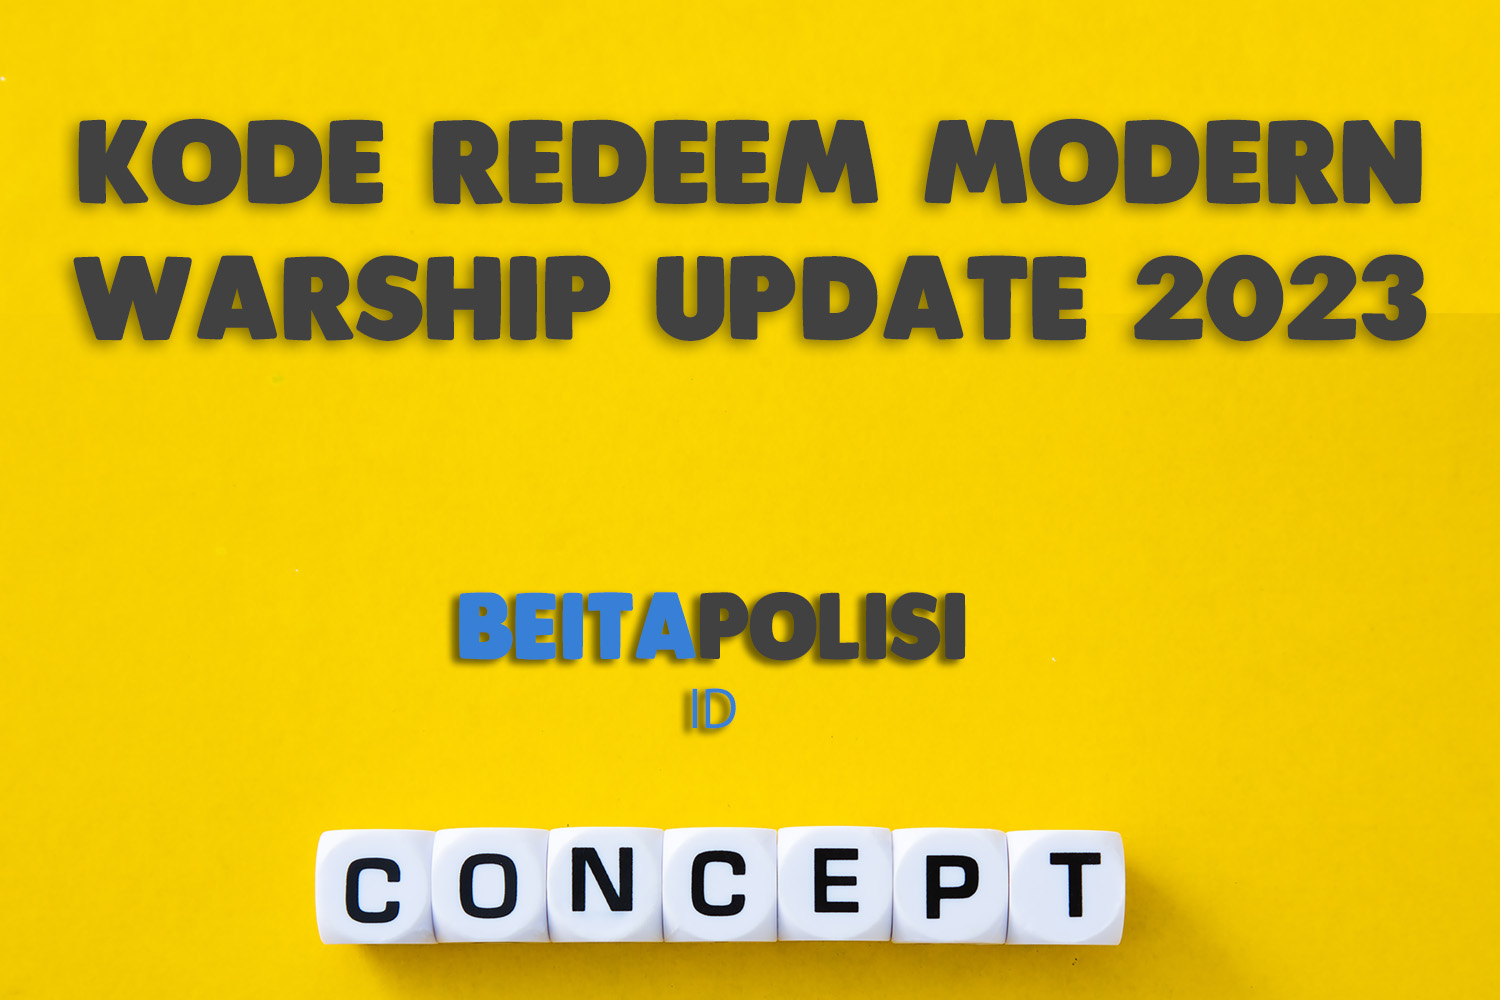 Kode Redeem Modern Warship Update 2023 Yang Masih Aktif